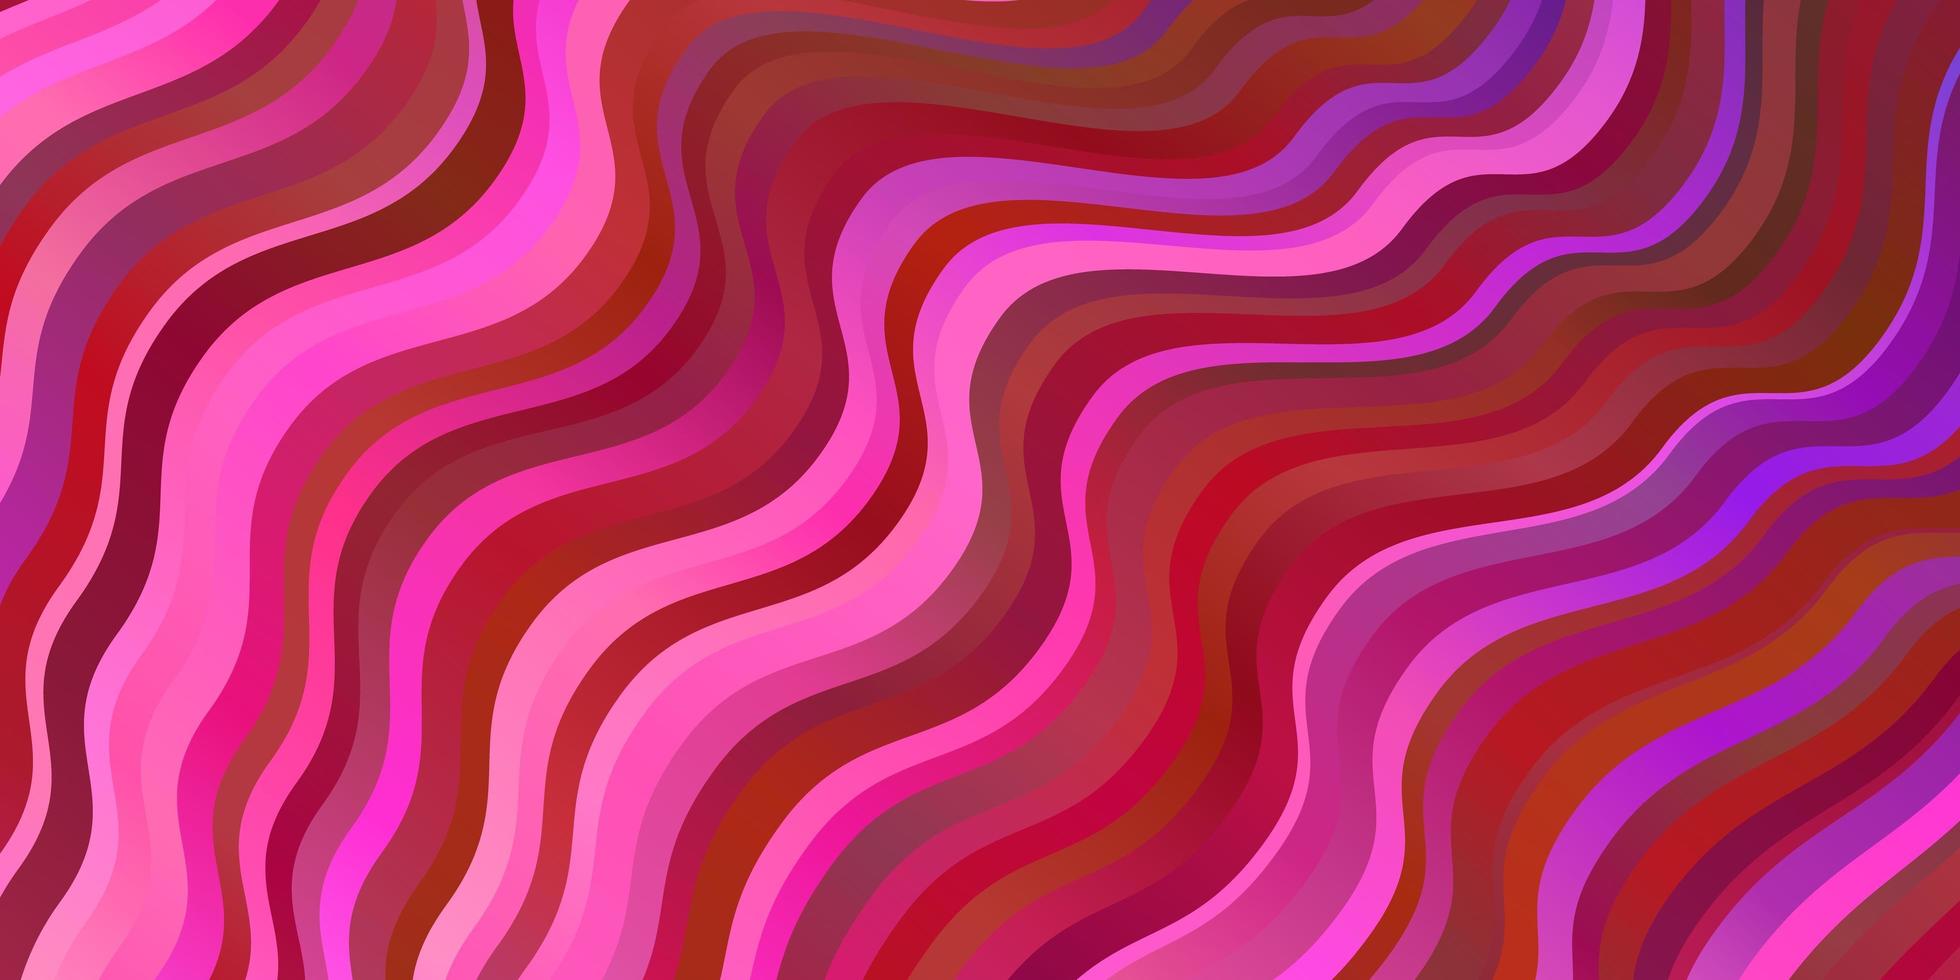 modelo de vetor rosa roxo escuro com linhas